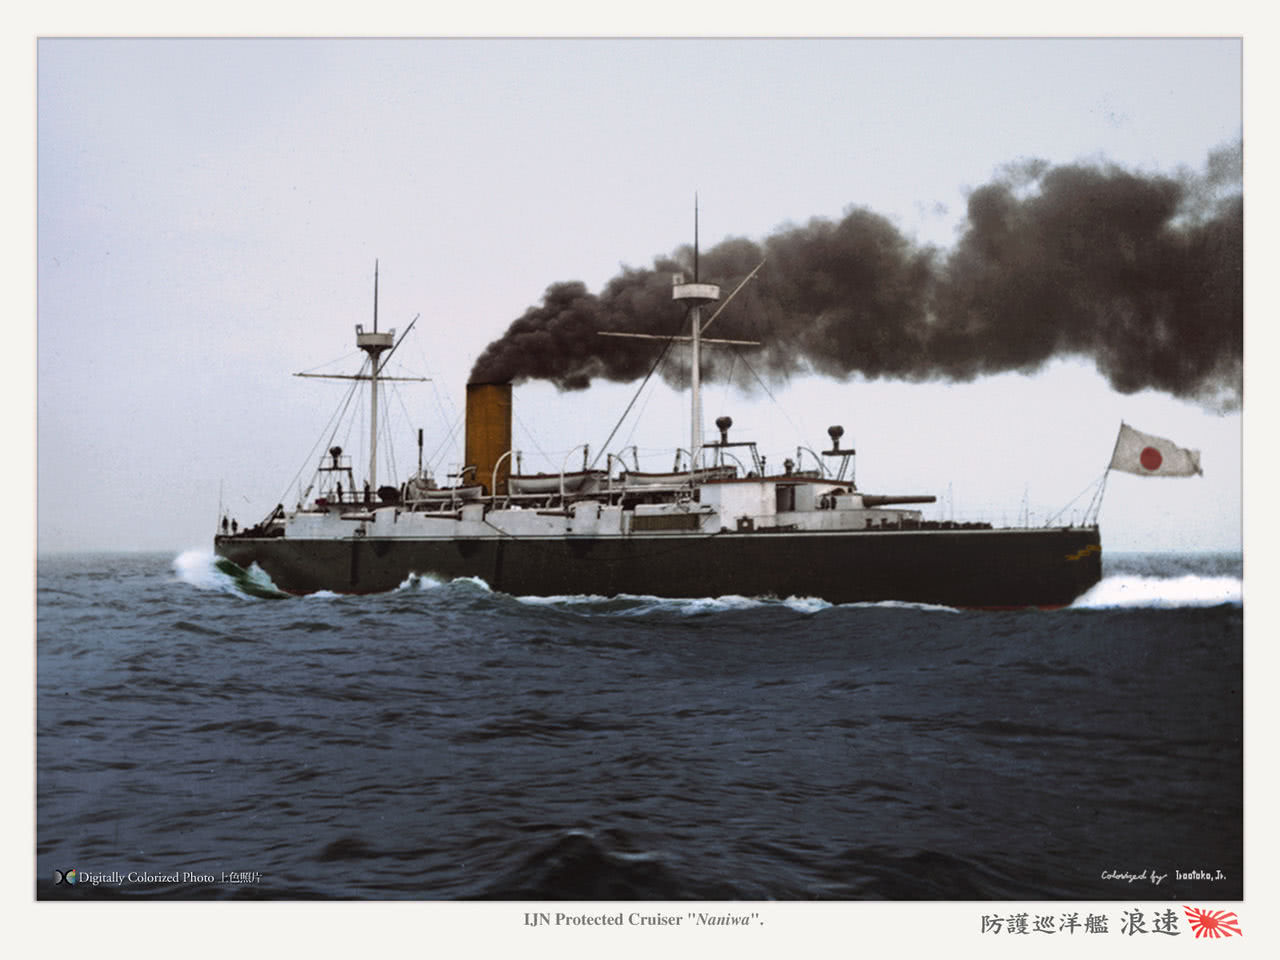 说句良心话,当年的大清北洋海军实力并不弱,而且还一度号称亚洲第一